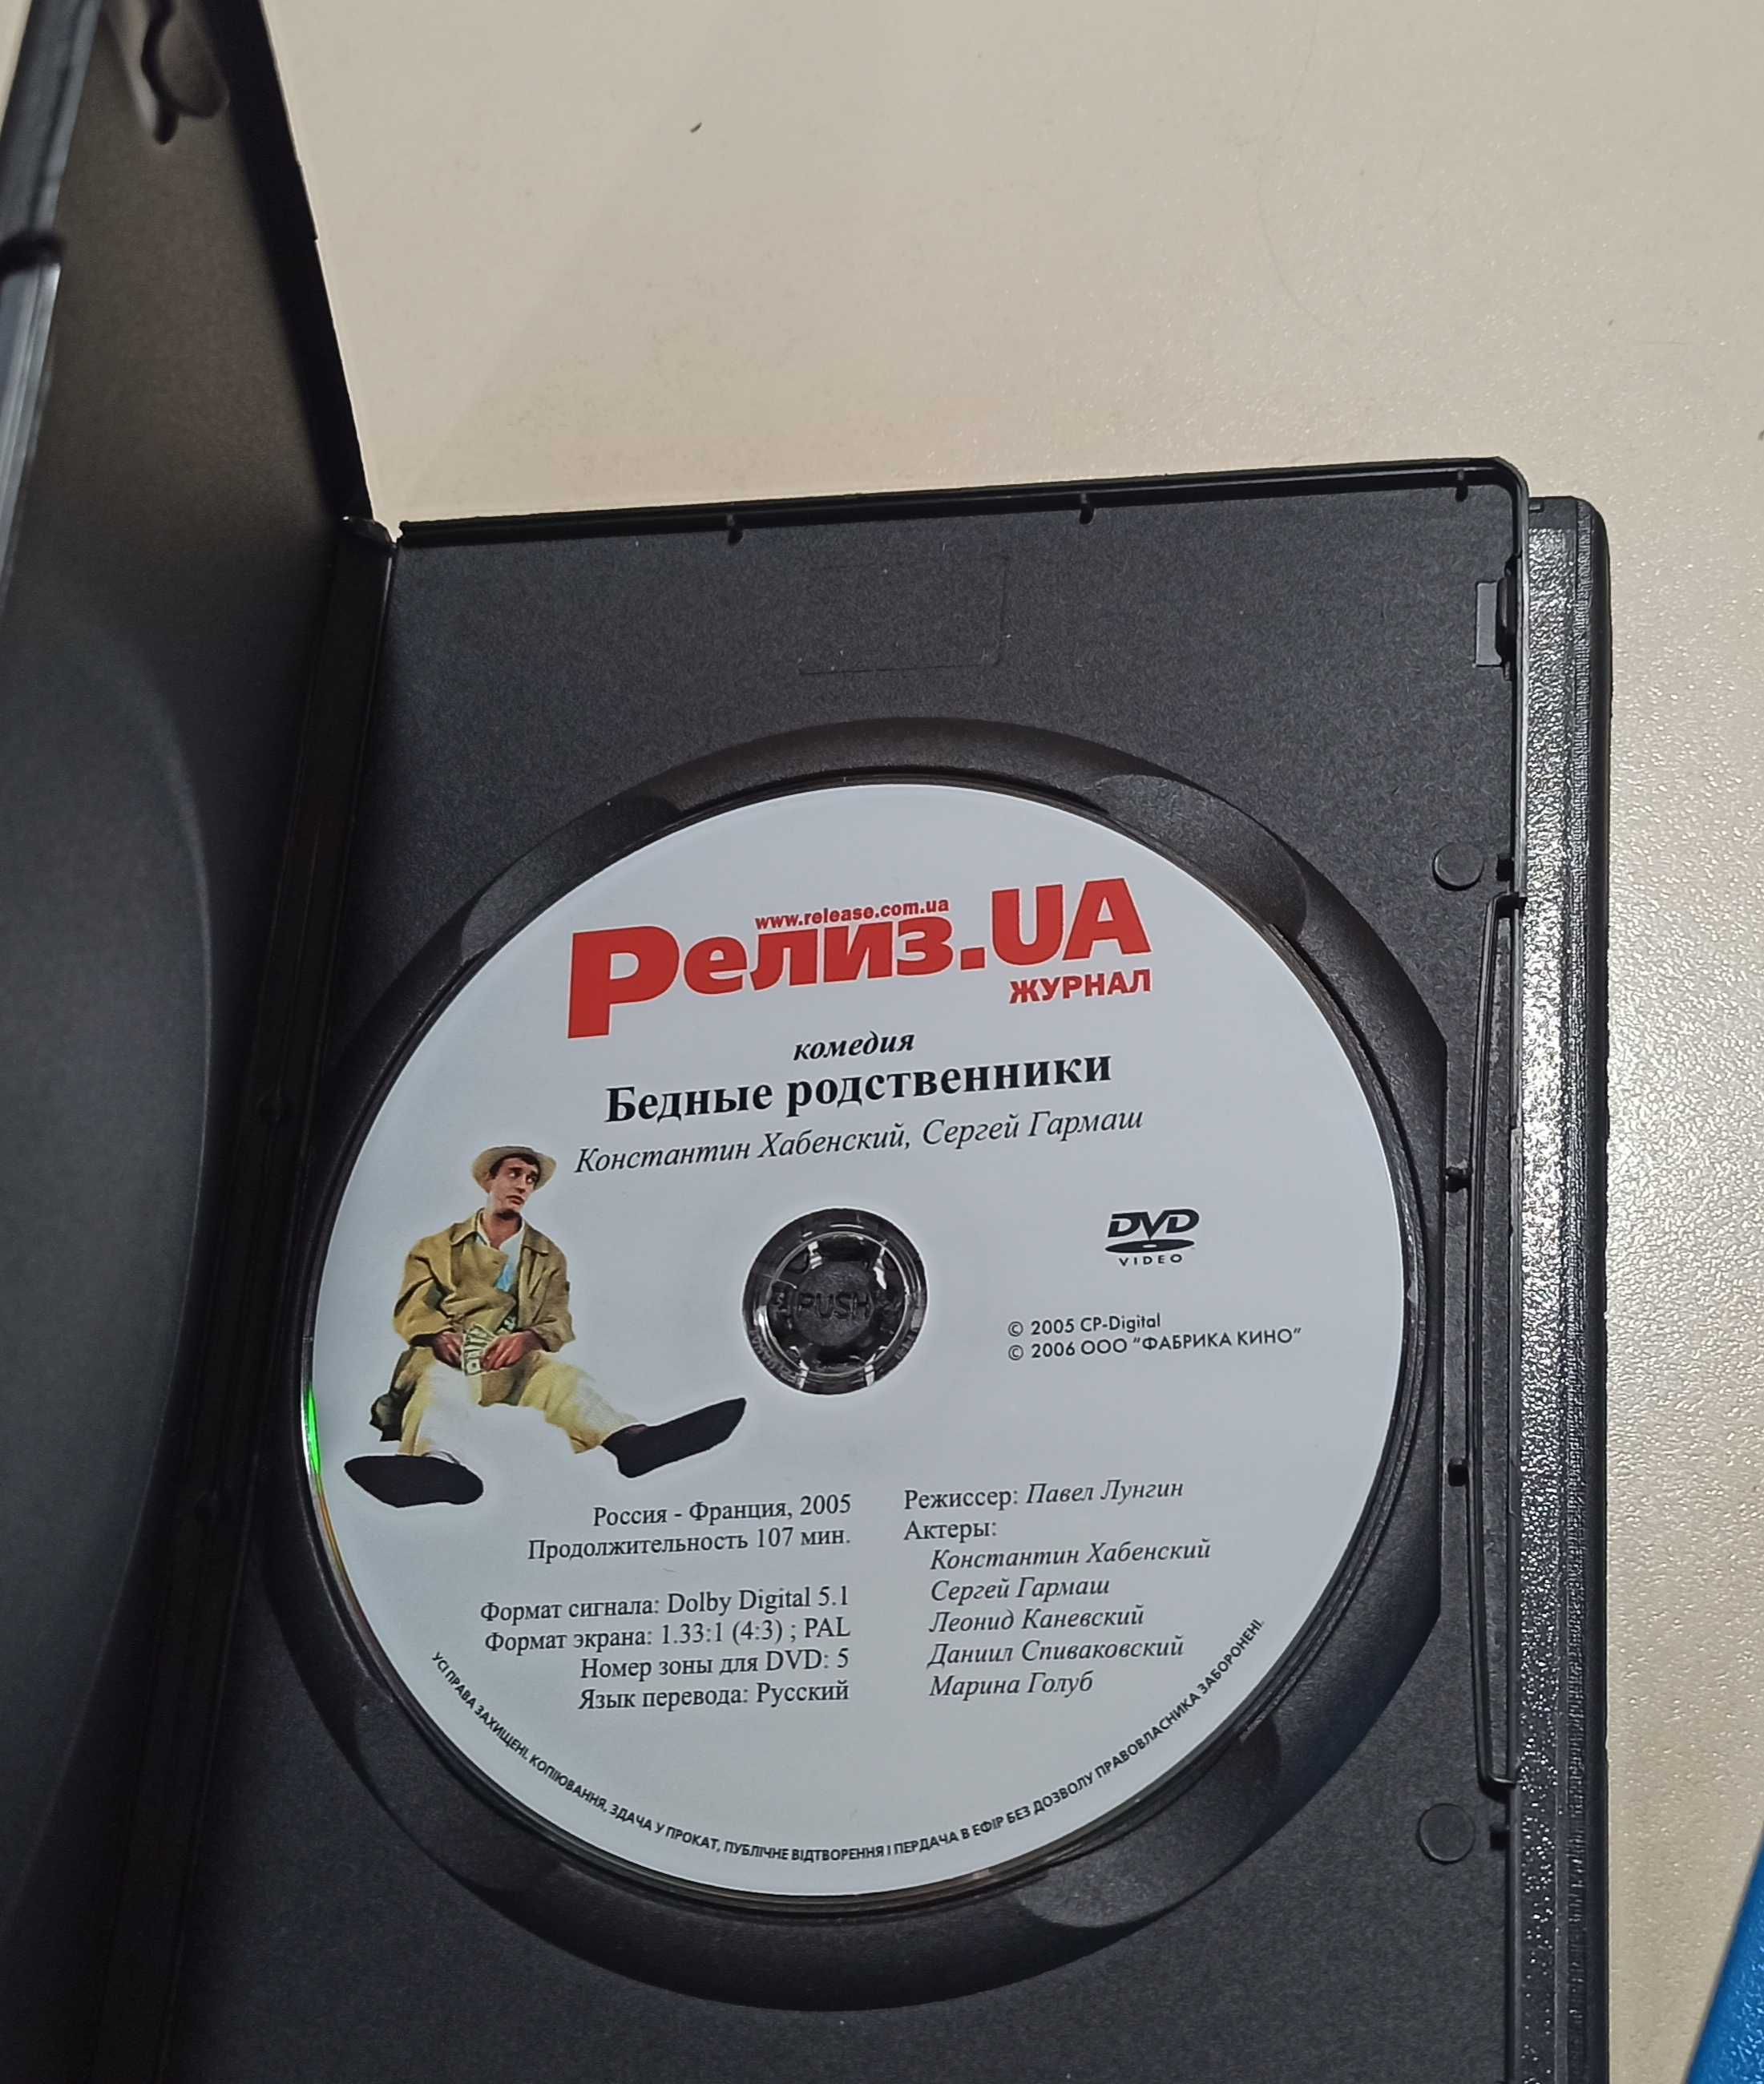 DVD приложения к журналу "Релиз. UA", "Кинодайджест", RUSSIAN DIGITAl.